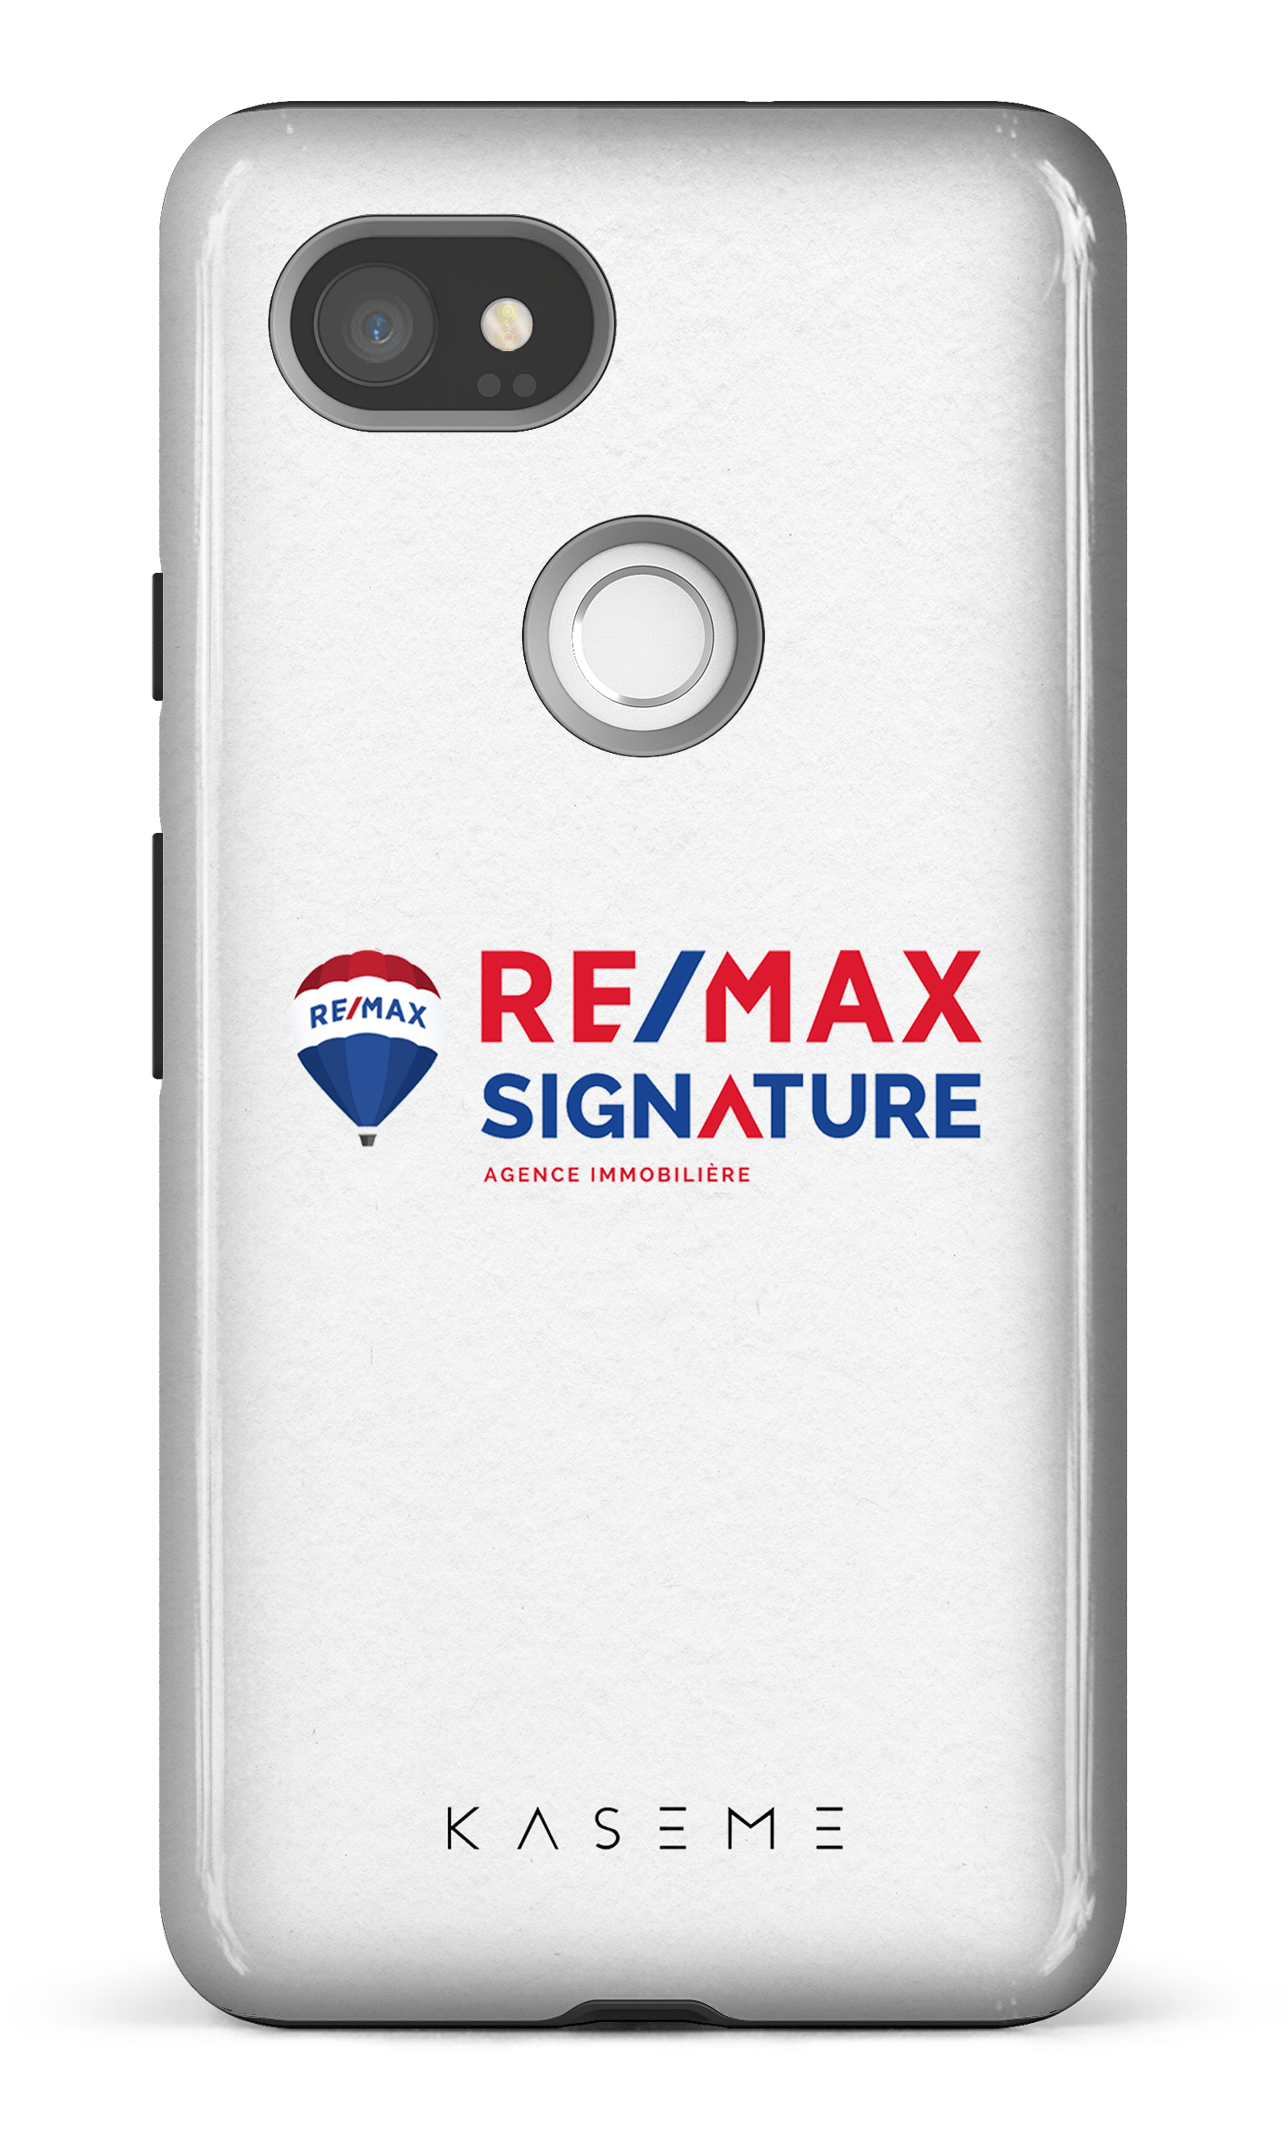 Remax Signature Blanc - Google Pixel 2 XL